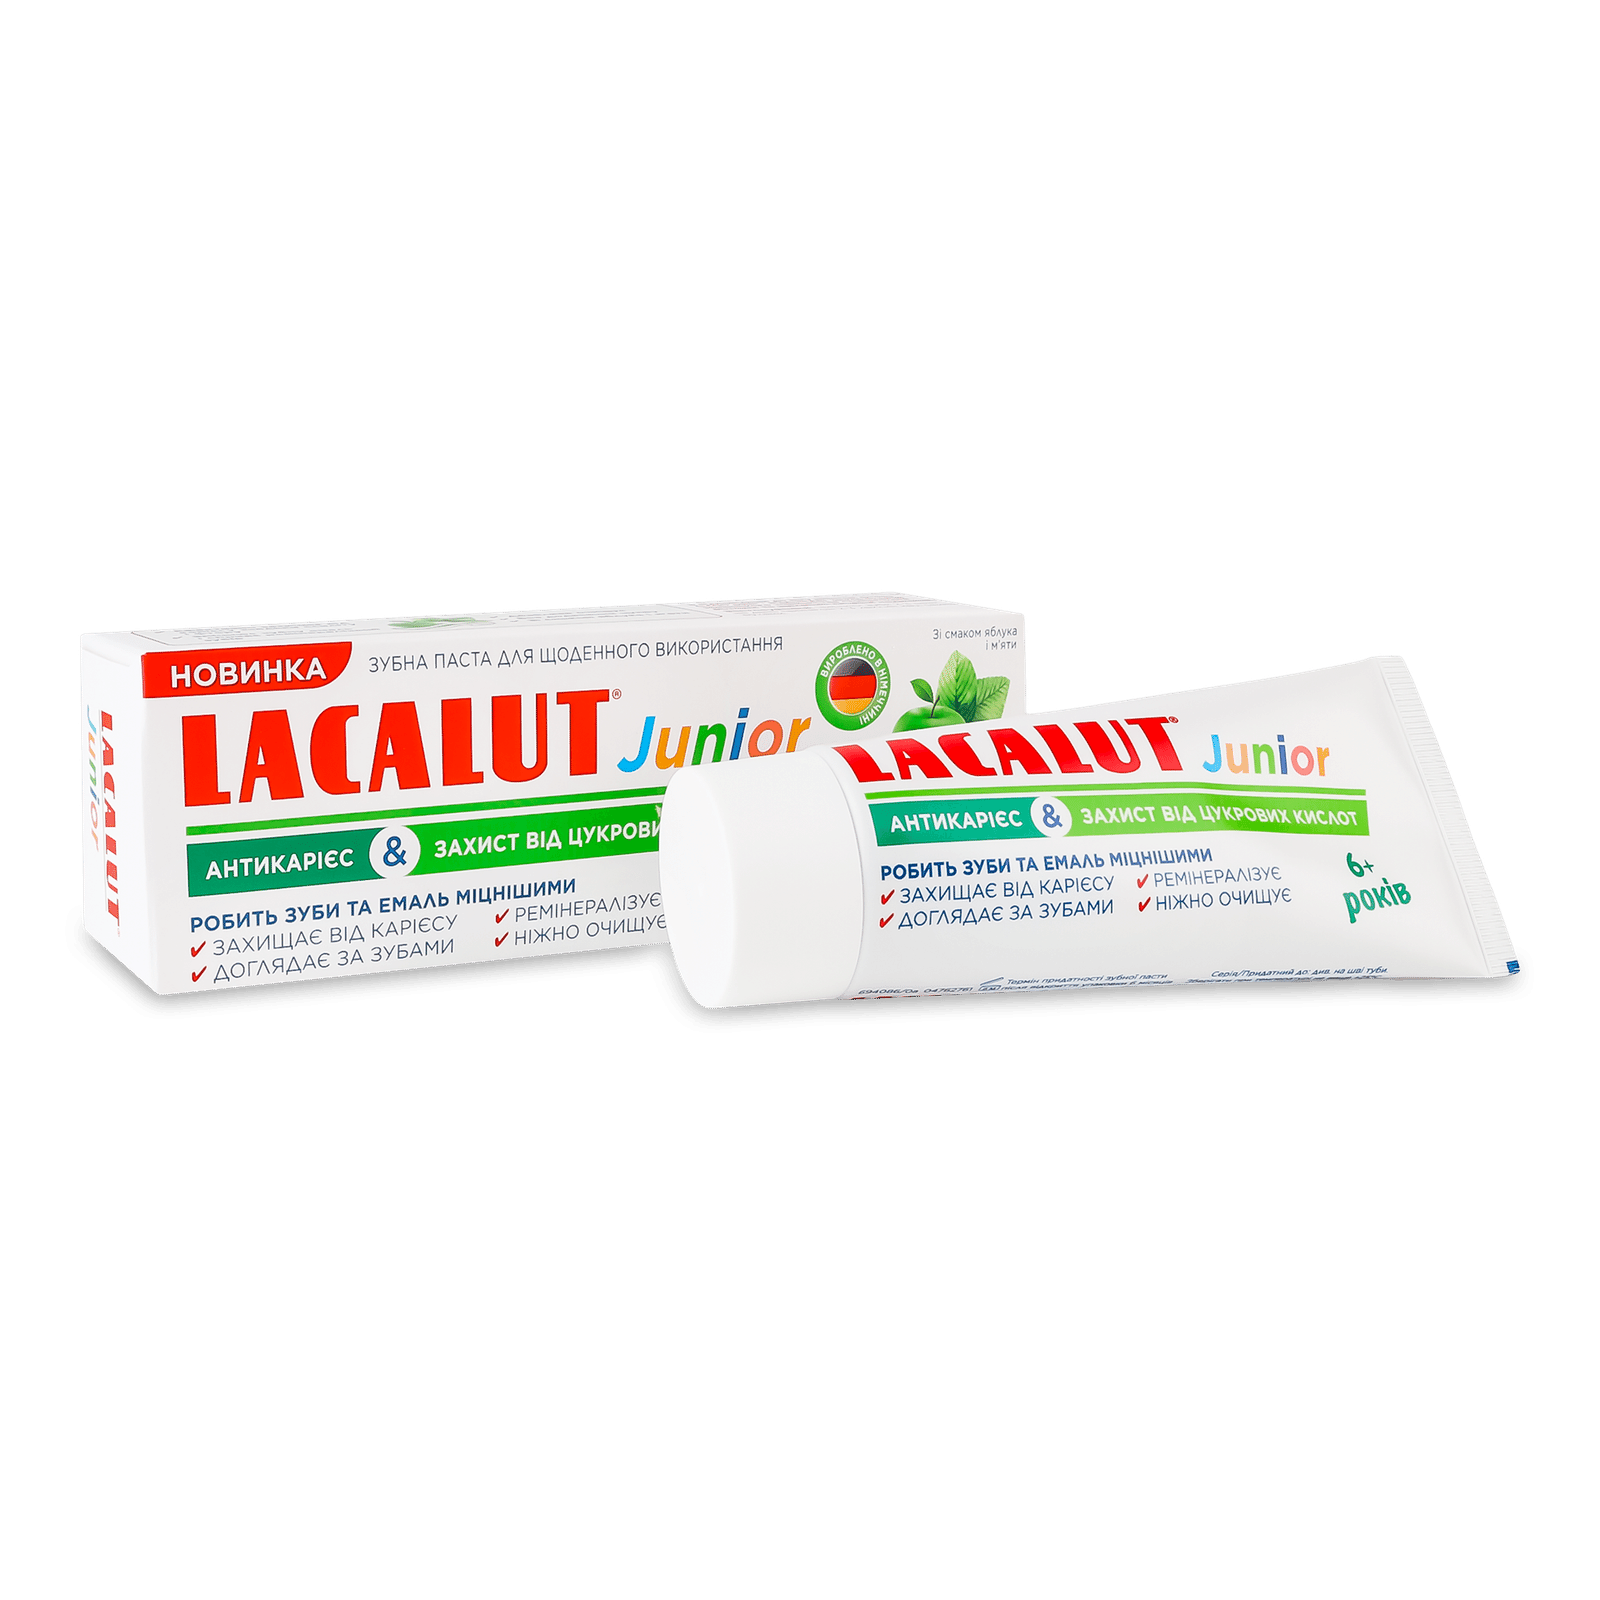 Паста зубна Lacalut Junior «Антикарієс & Захист від цукрових кислот» - 1